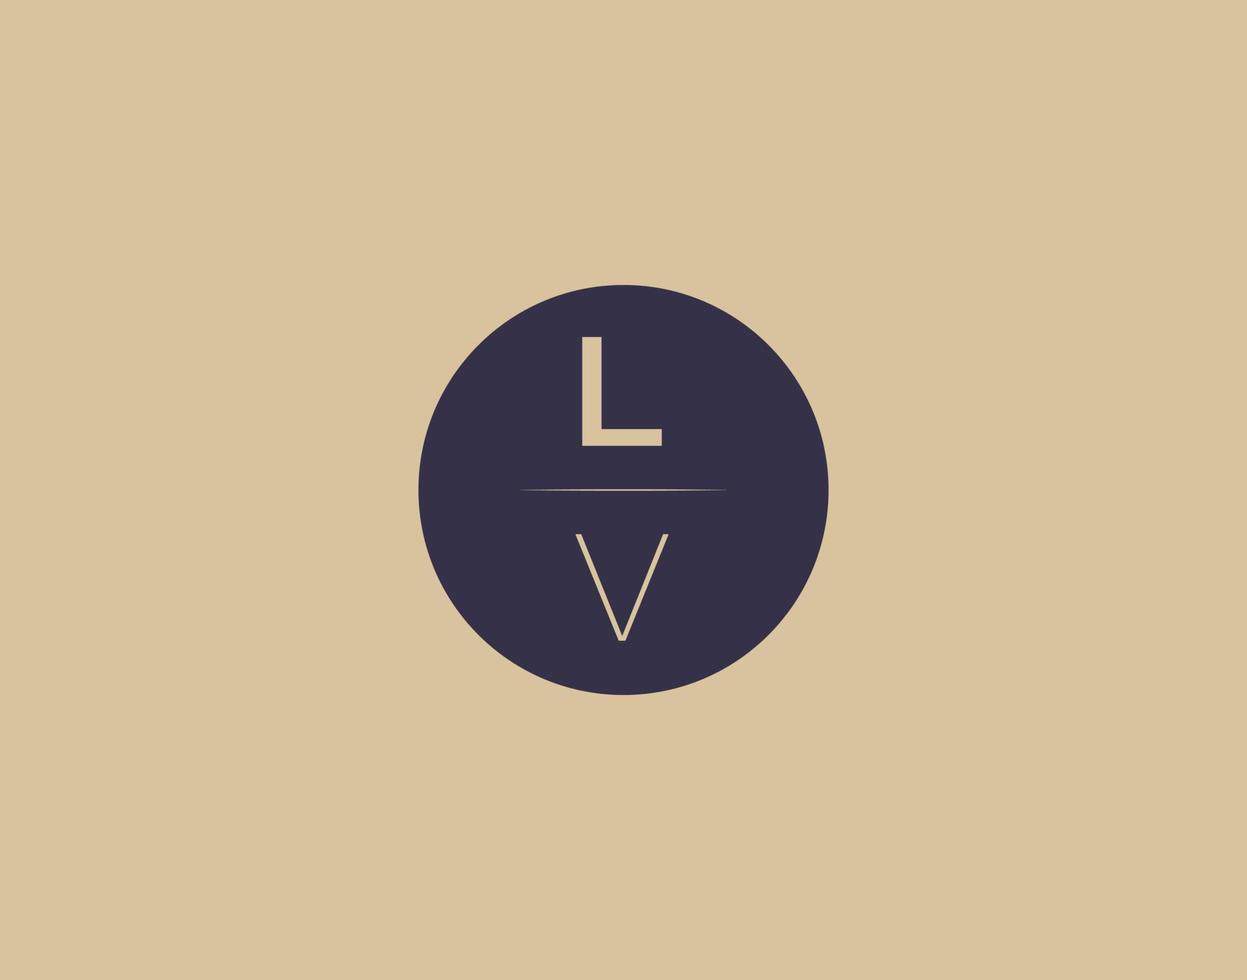 lv lettre moderne élégant logo design images vectorielles vecteur